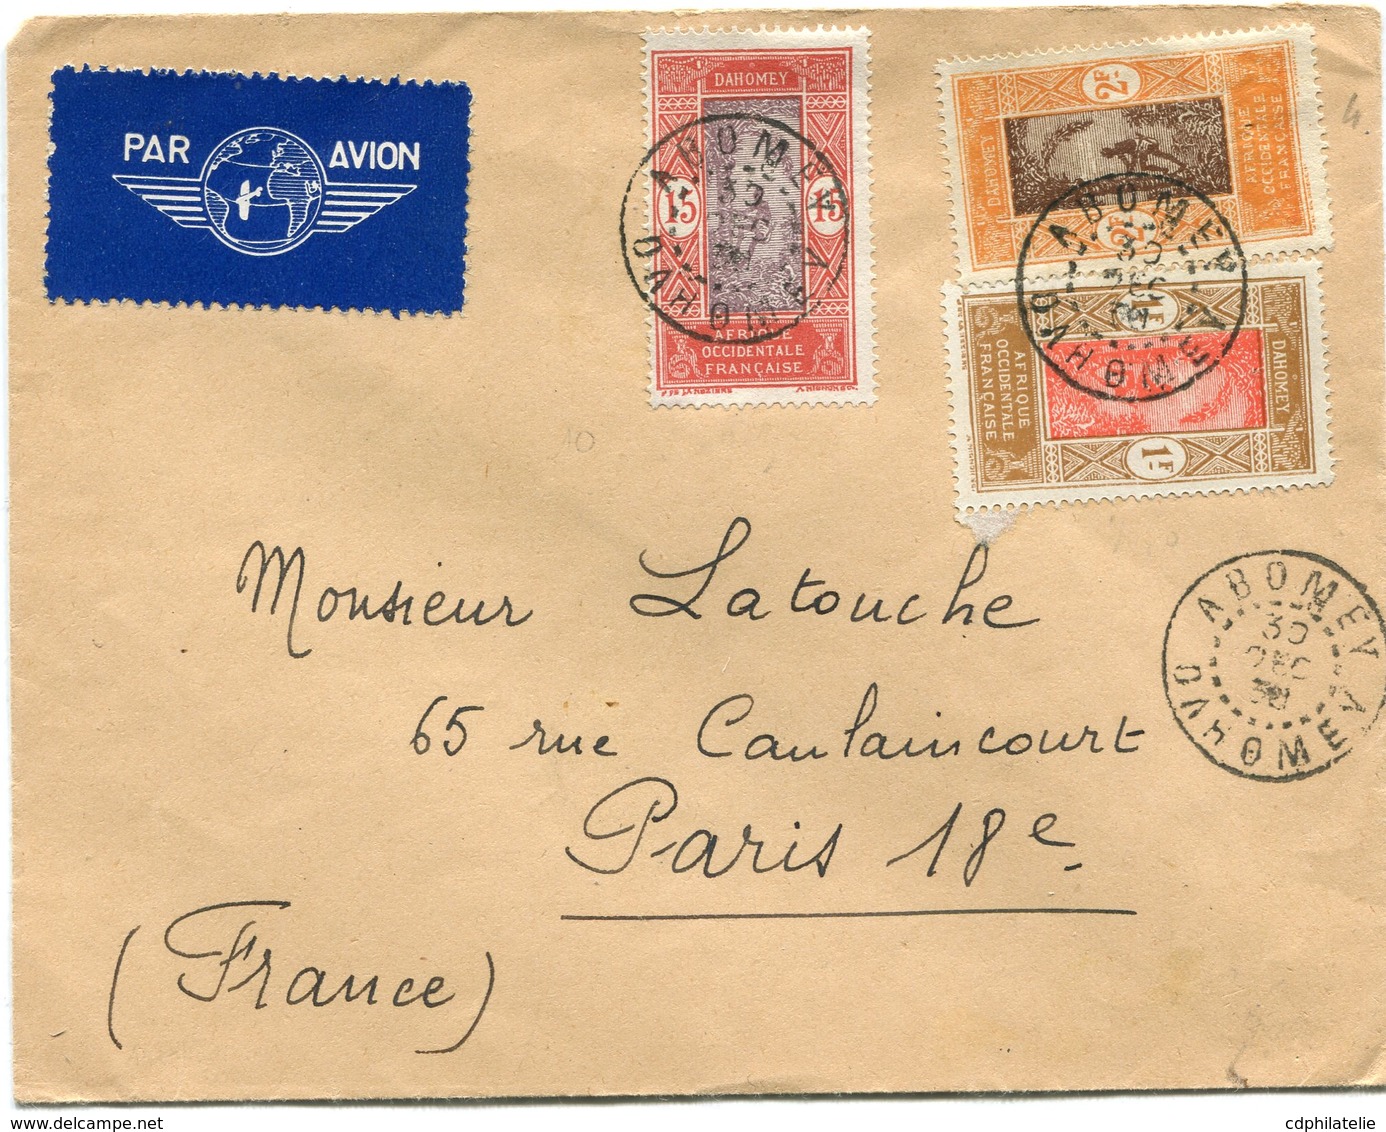 DAHOMEY LETTRE PAR AVION DEPART ABOMEY 30 DEC 38 DAHOMEY POUR LA FRANCE - Storia Postale